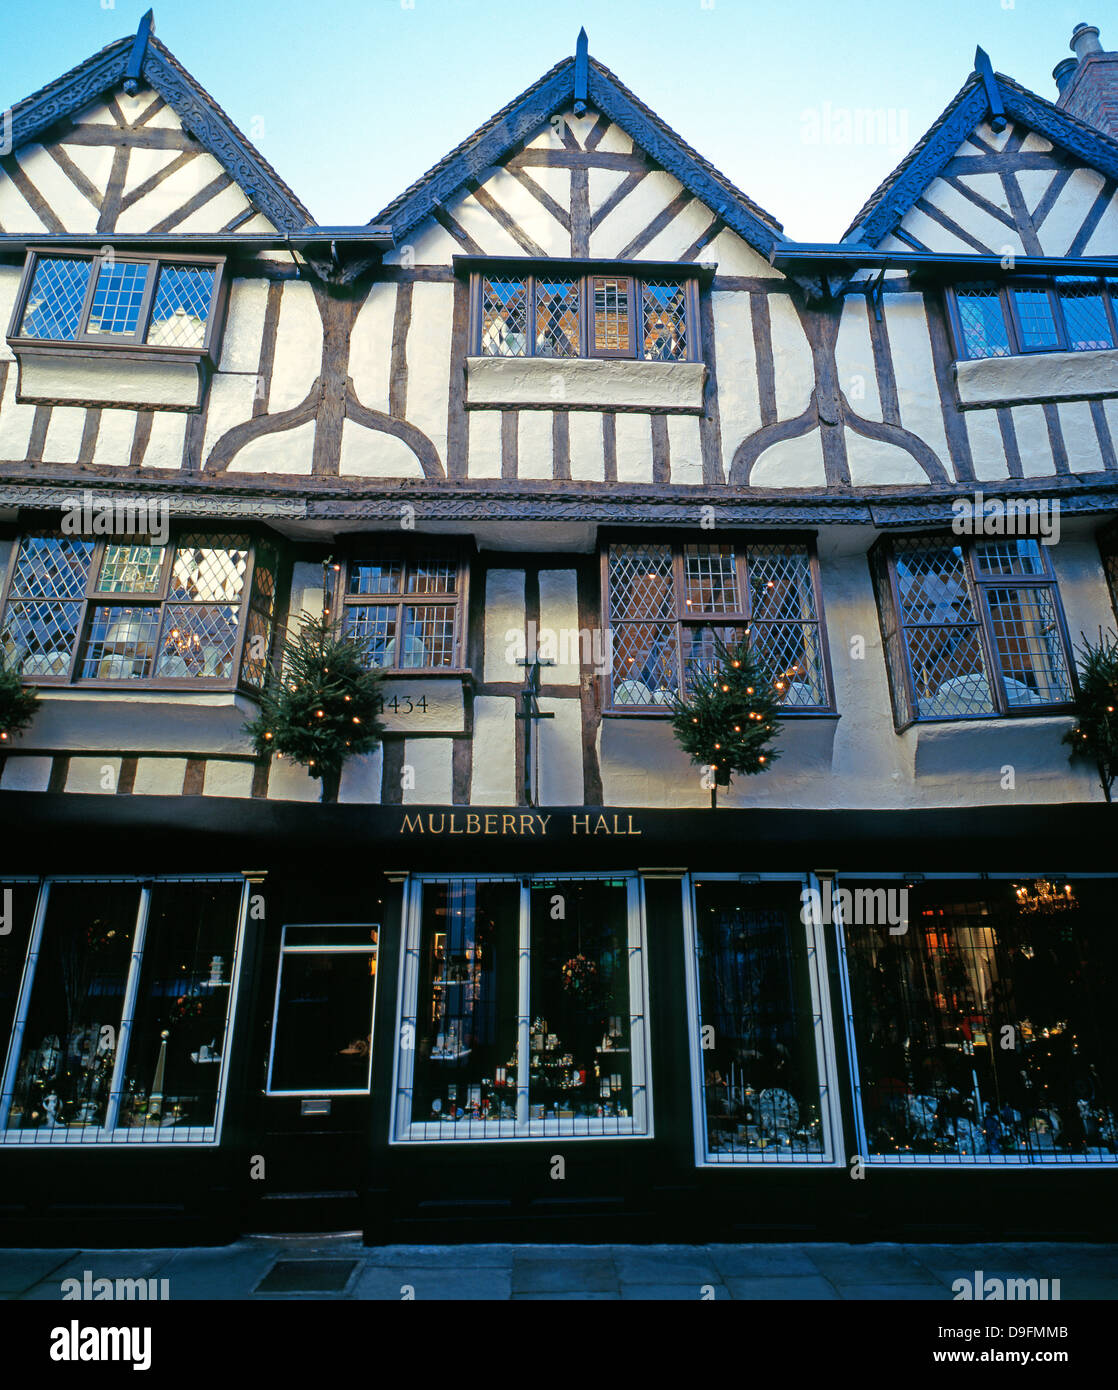 Cadre en bois, ancienne salle des mûriers, la porcelaine fine et coffee shop, York, Angleterre, Royaume-Uni. Image prise en 1999. Ce magasin fermé en 2016. Banque D'Images